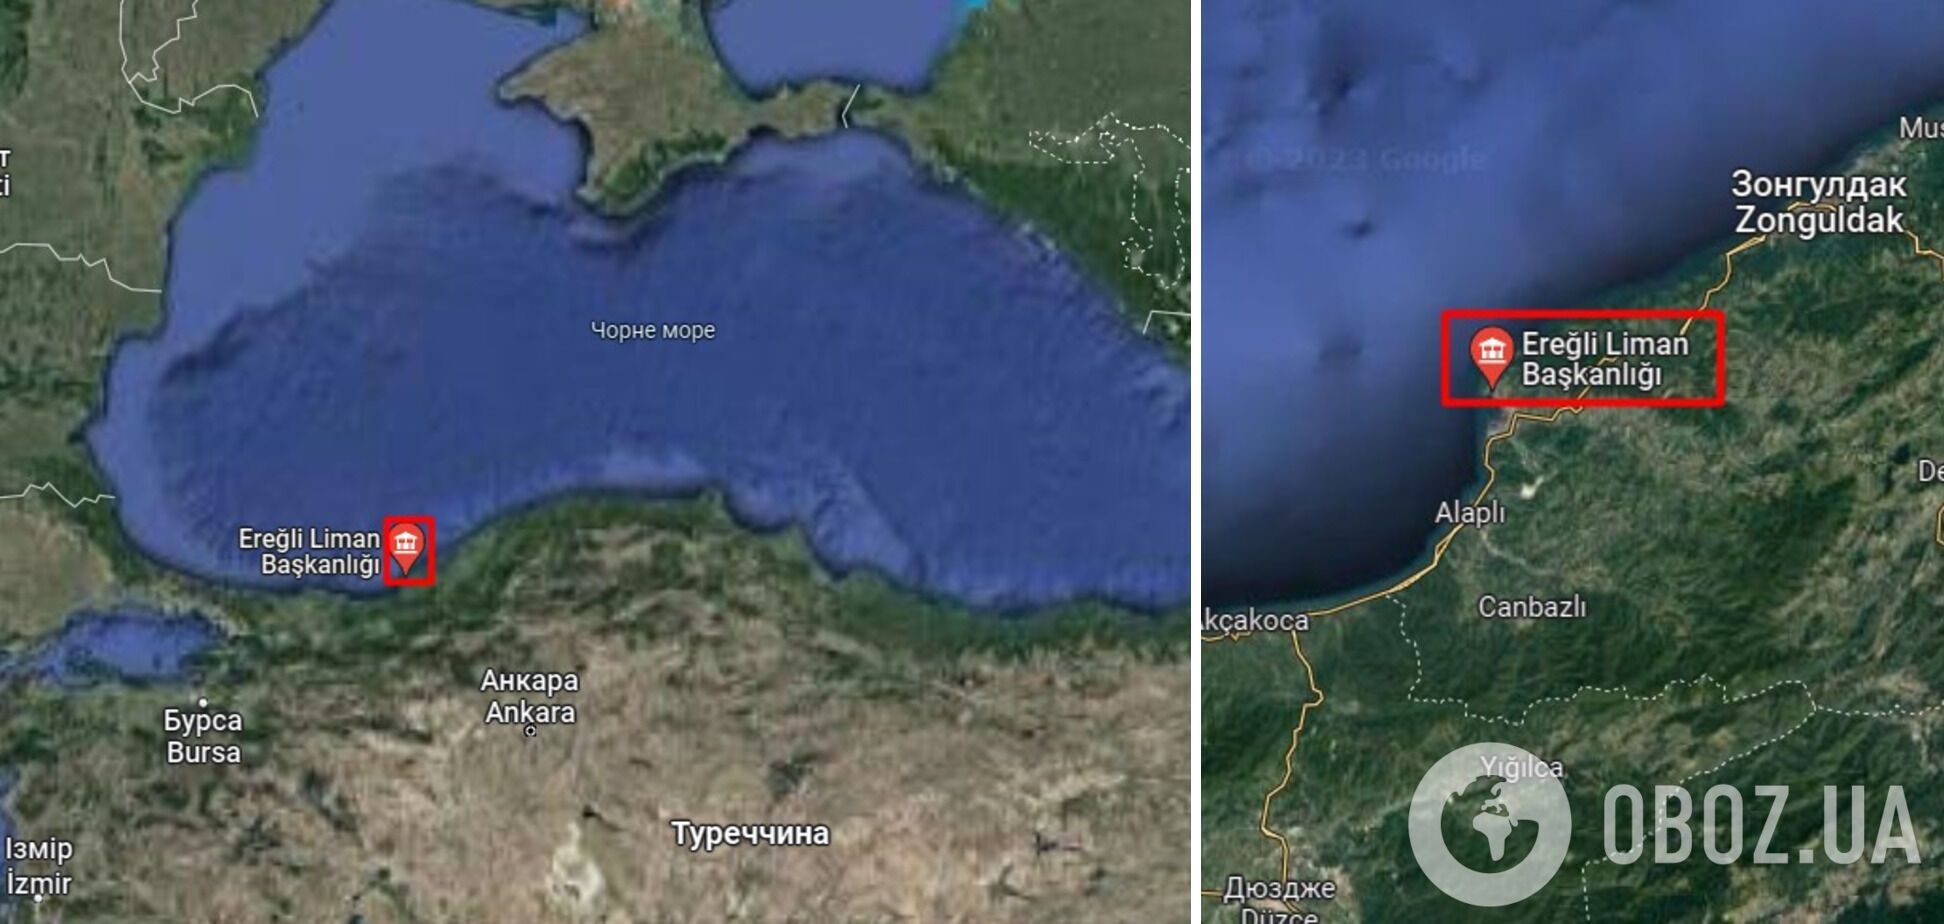 Турецьке судно, яке зникло в Чорному морі під час шторму, затонуло: на його борту було 12 членів екіпажу